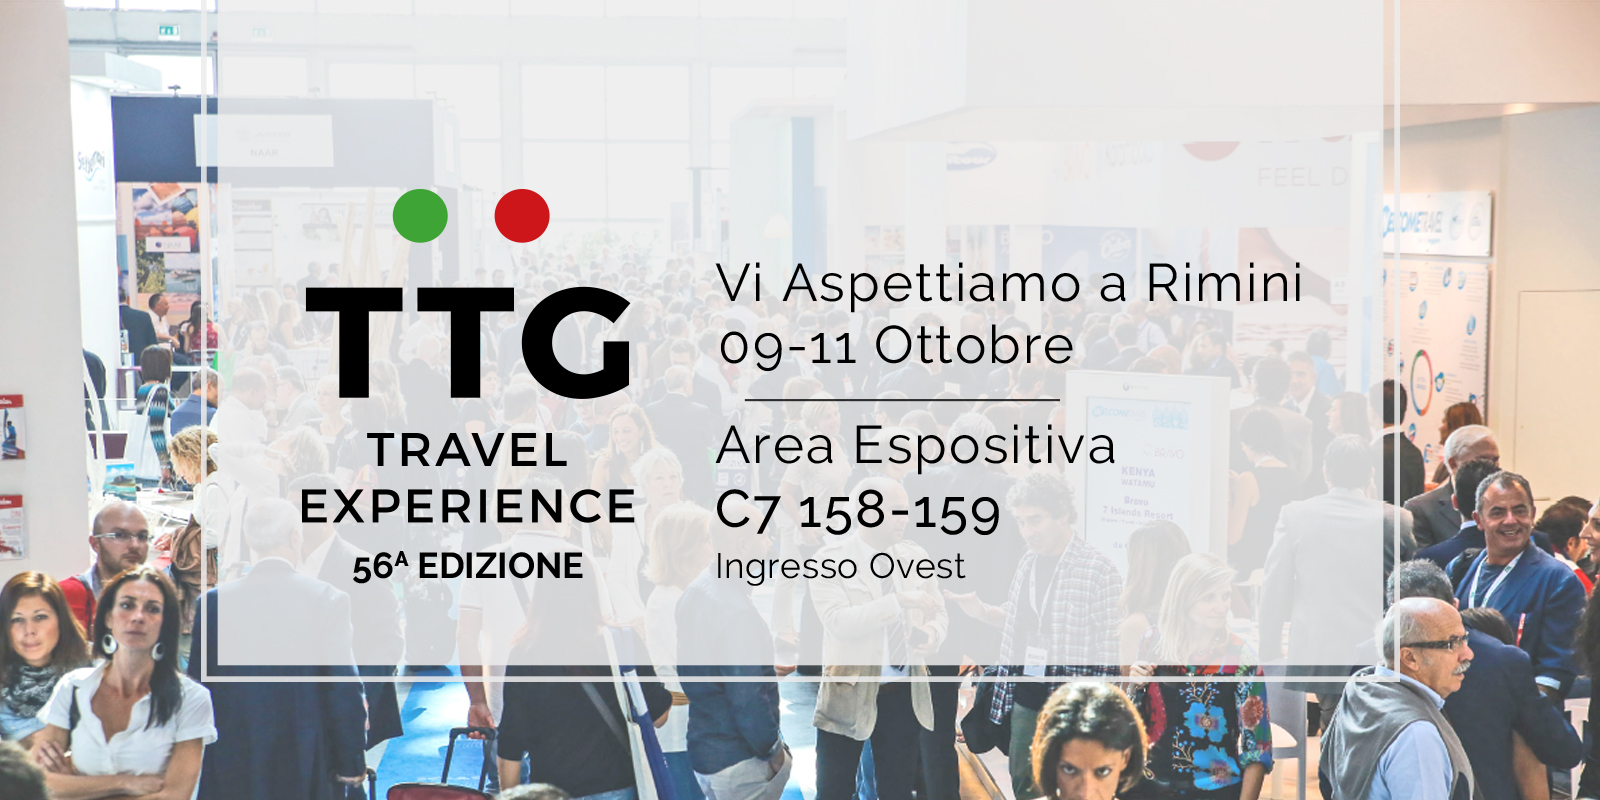 Il nostro stand al TTG di Rimini dal 9 all’11 ottobre